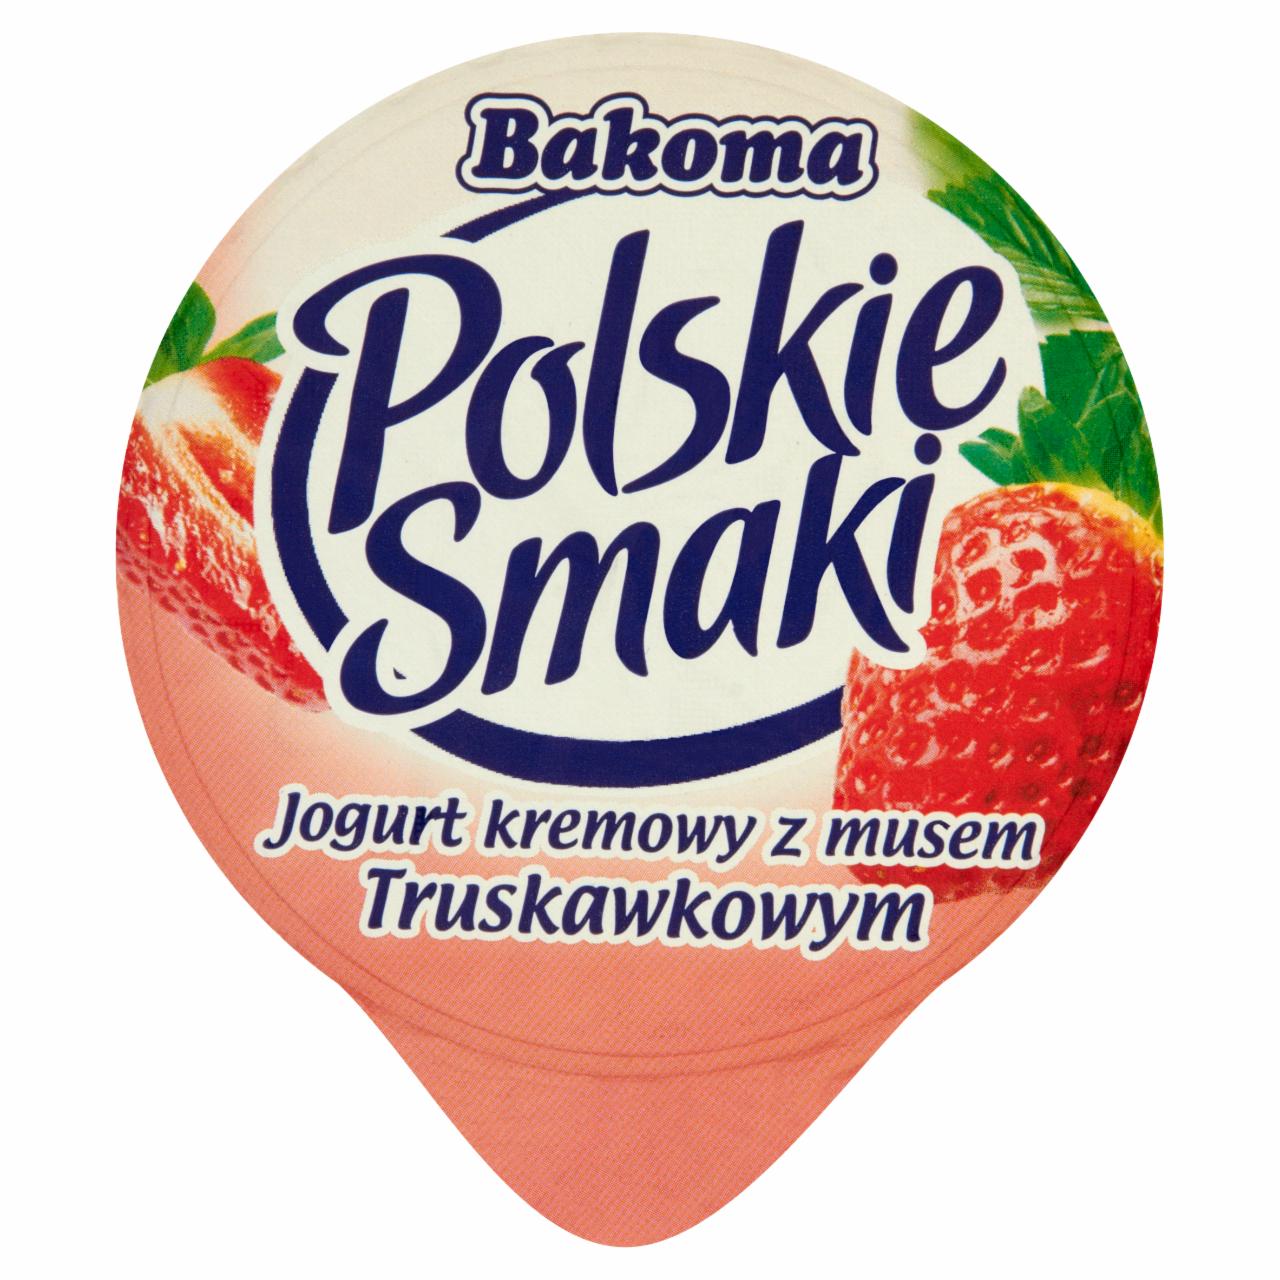 Fotografie - Polskie Smaki Jogurt kremowy z musem Truskawkowym Bakoma